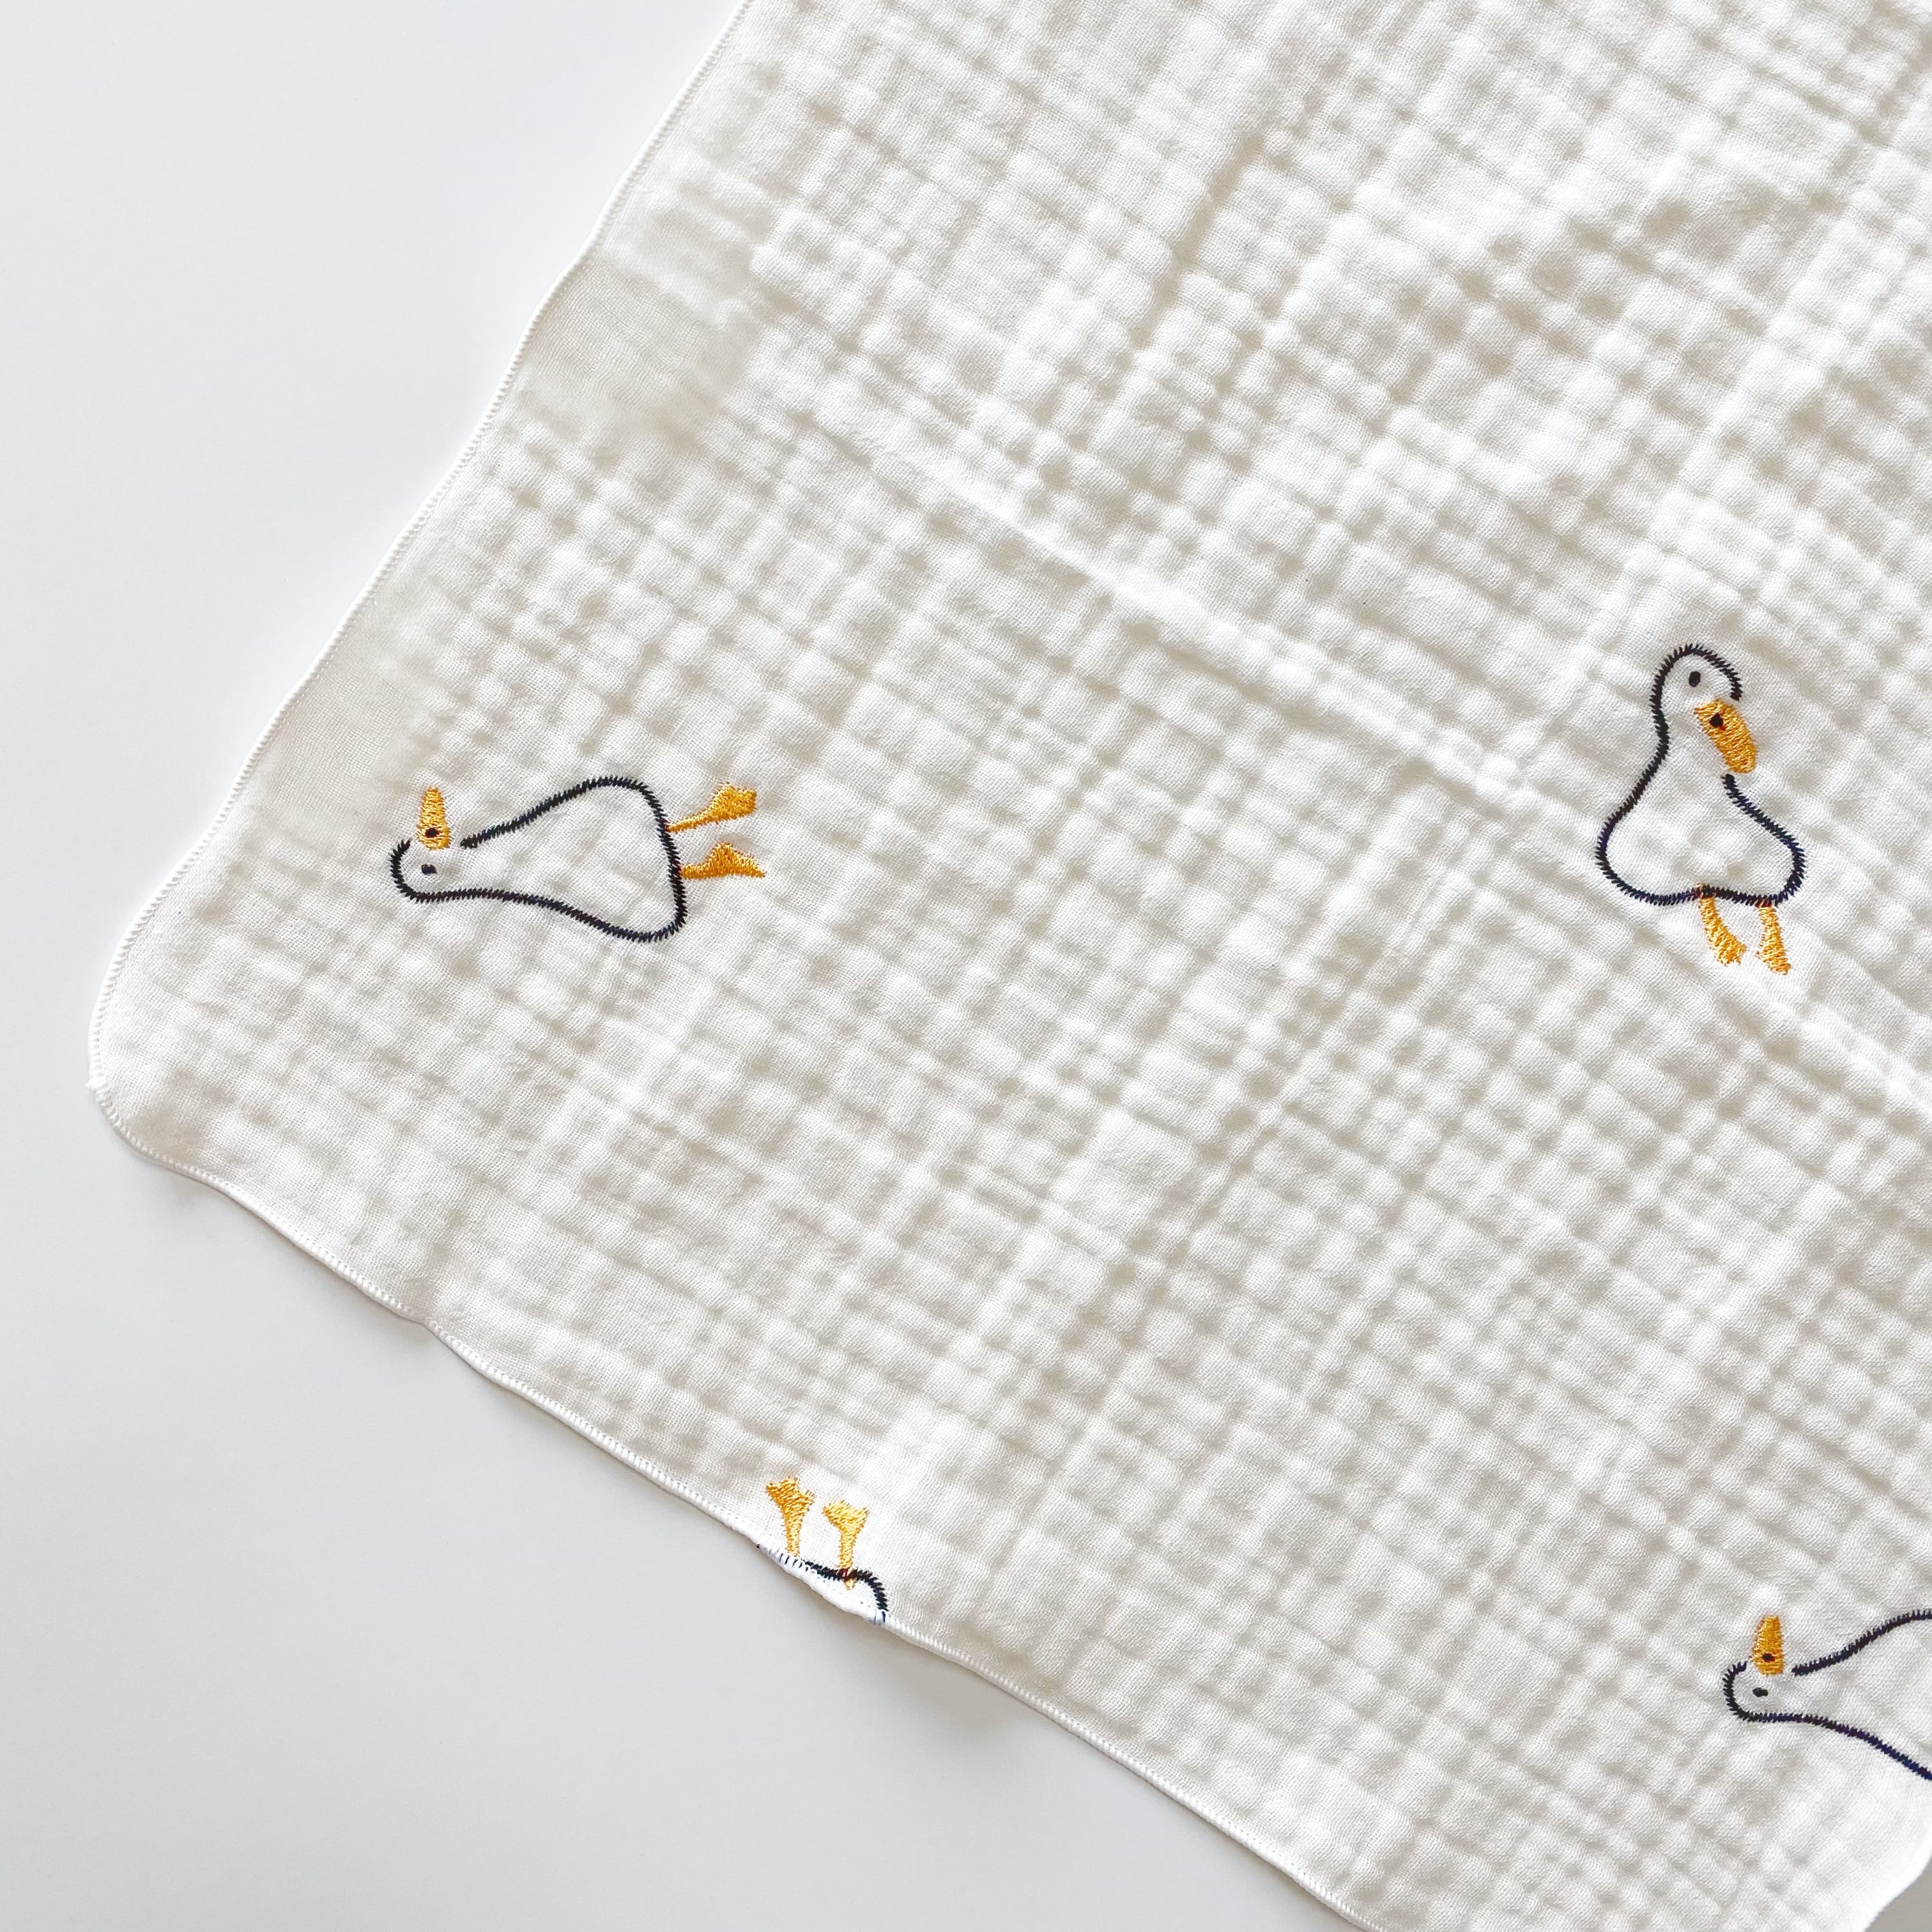 あひる刺繍ガーゼハンカチ5枚セット | イブル&Baby Fabric LilyBlanc